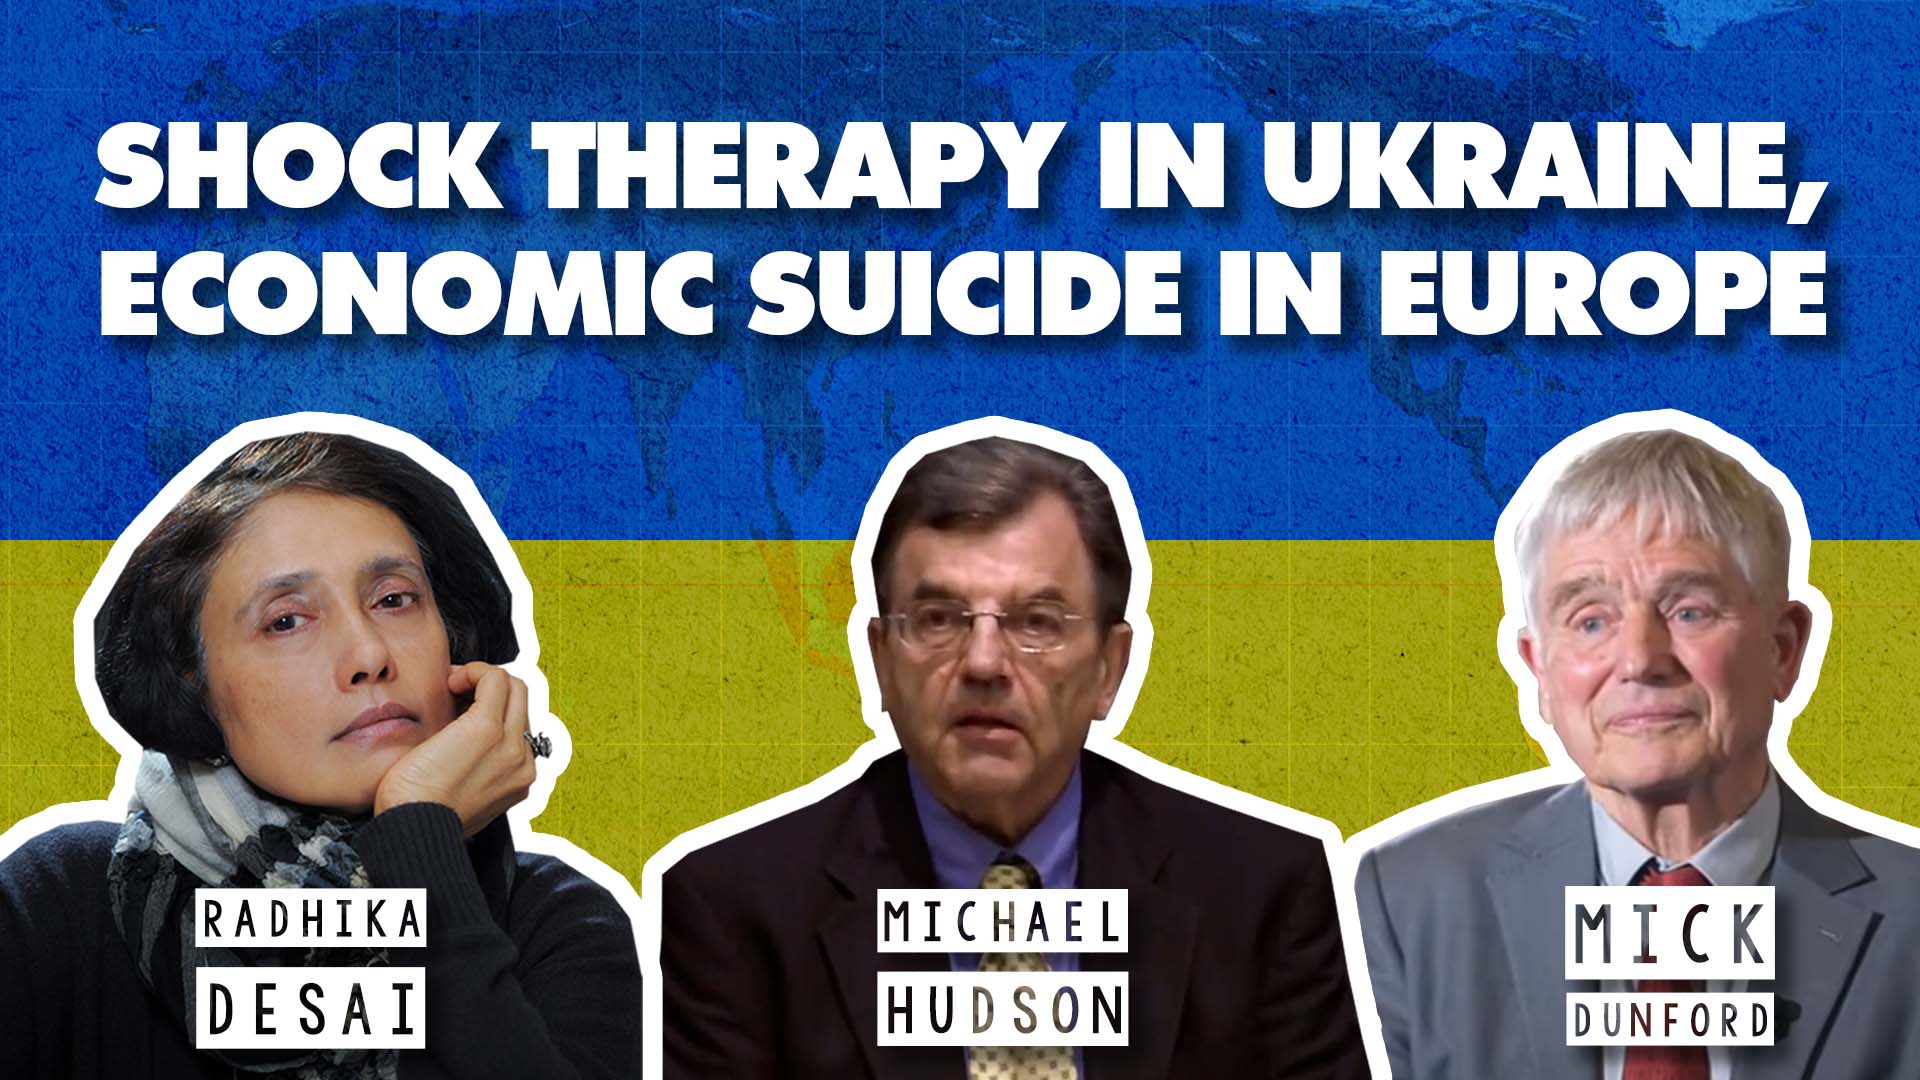 Ukraine neoliberalism Europe economy Radhika Desai Michael Hudson Mick Dunford